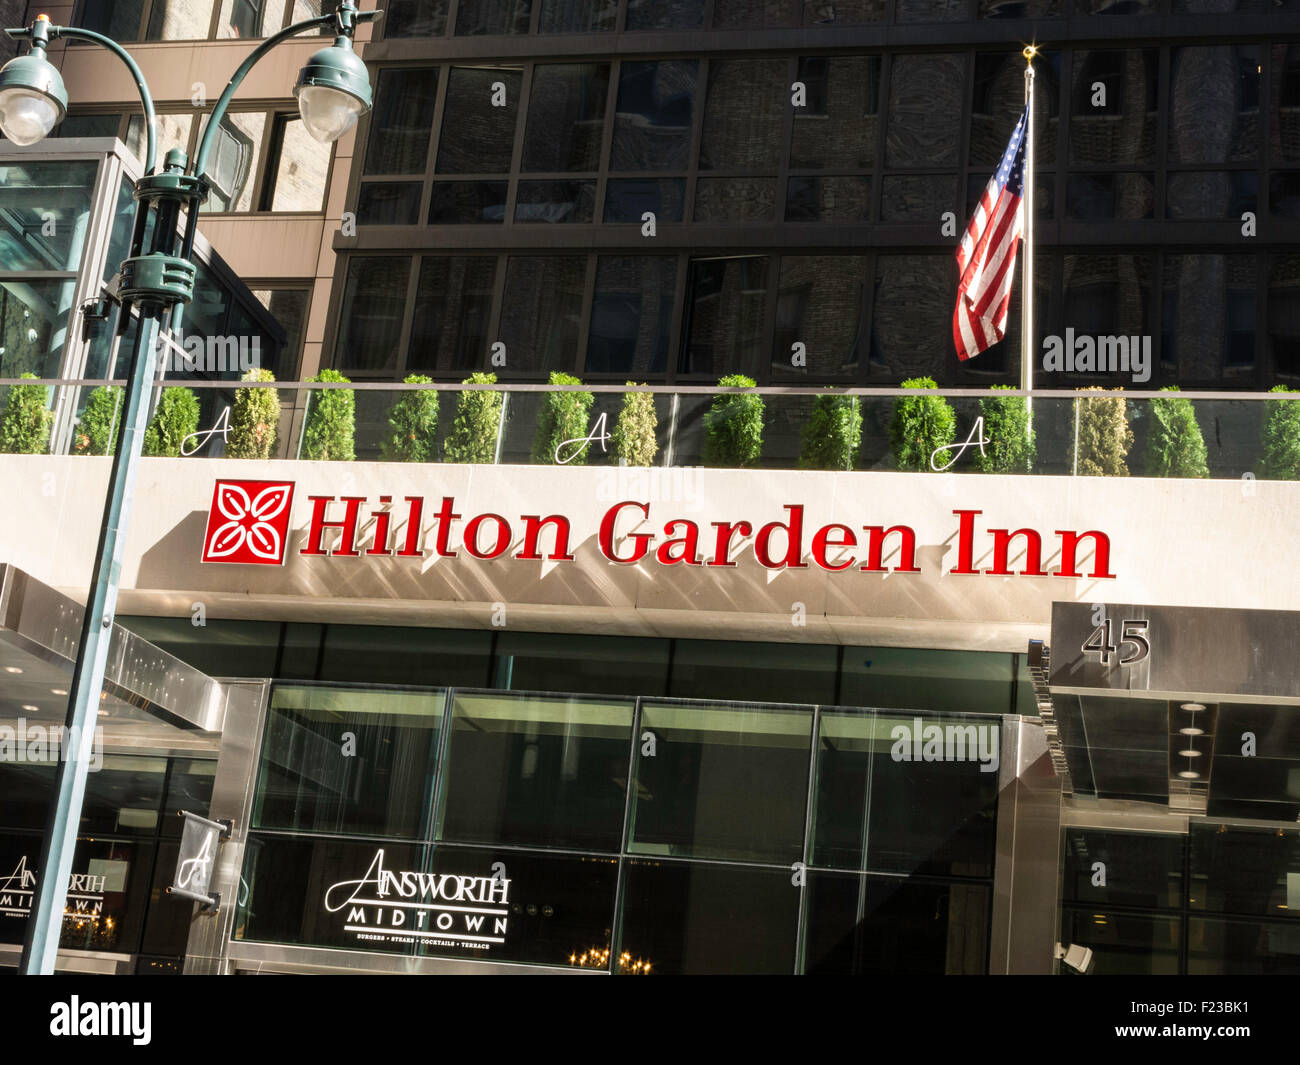 Hilton Garden Inn On East 33rd Street Nyc Stock Photo 87356165